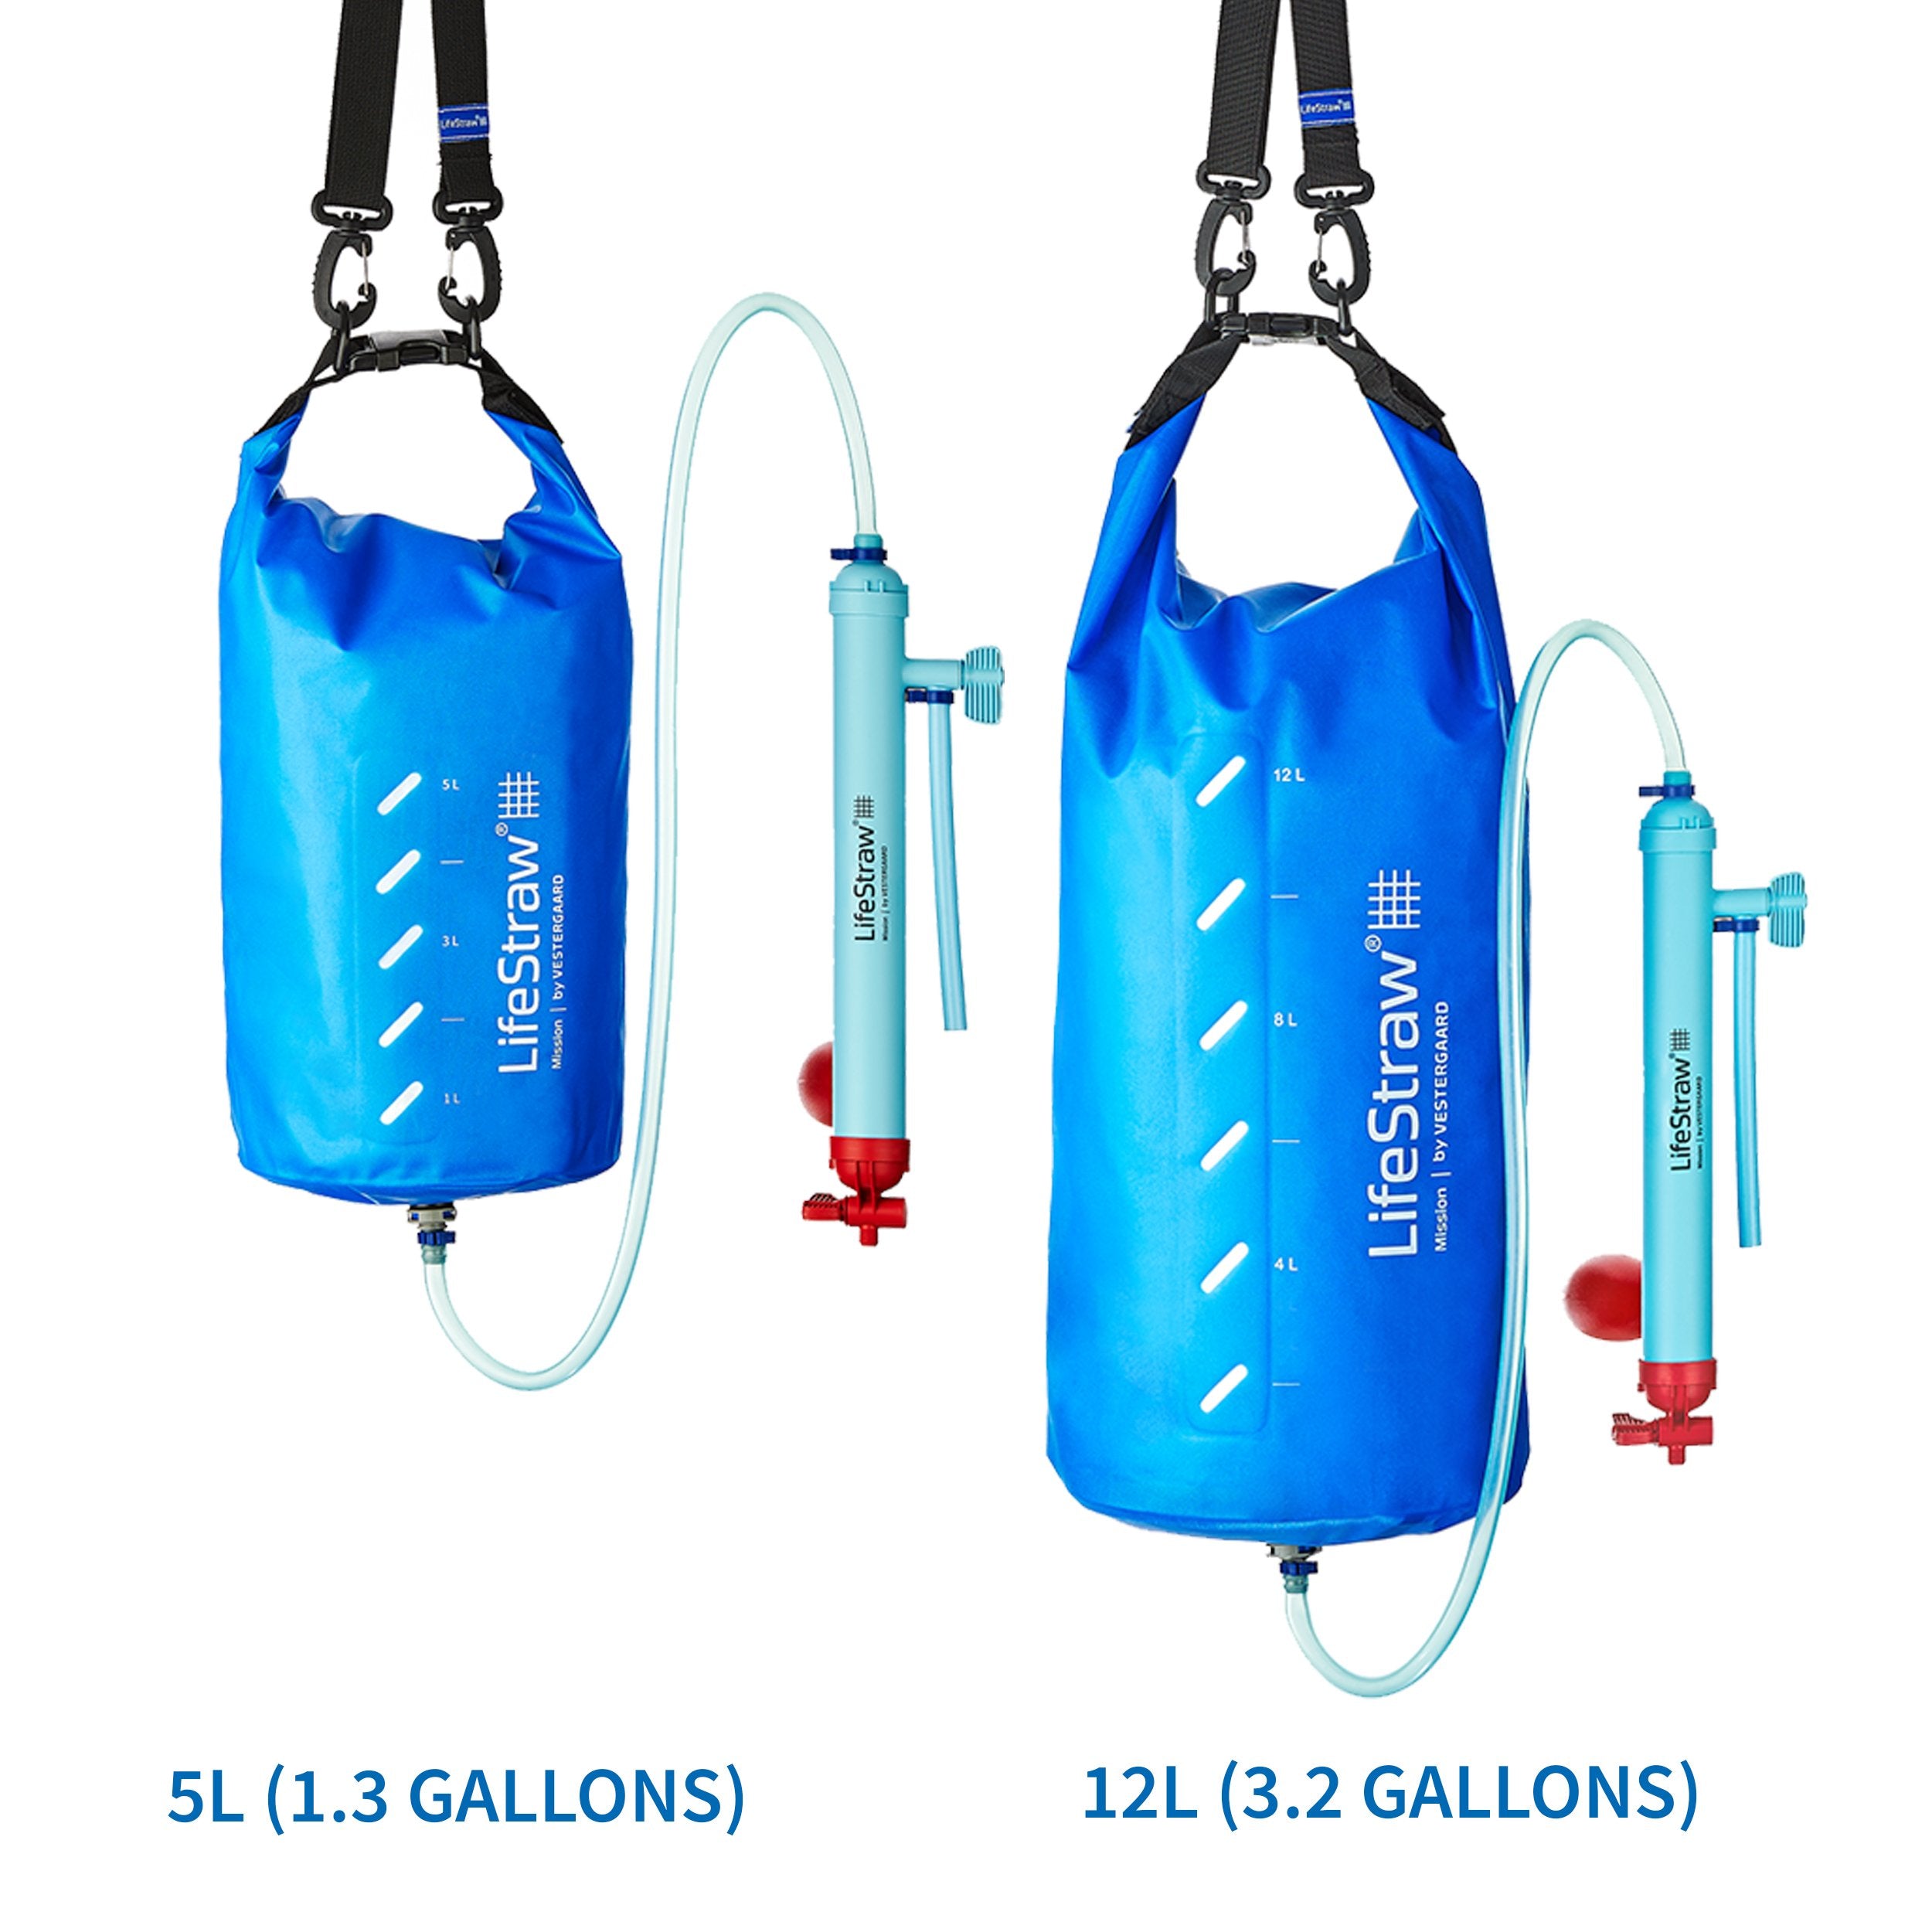 LifeStraw Mission Kompakter Wasserreiniger 12L Filter